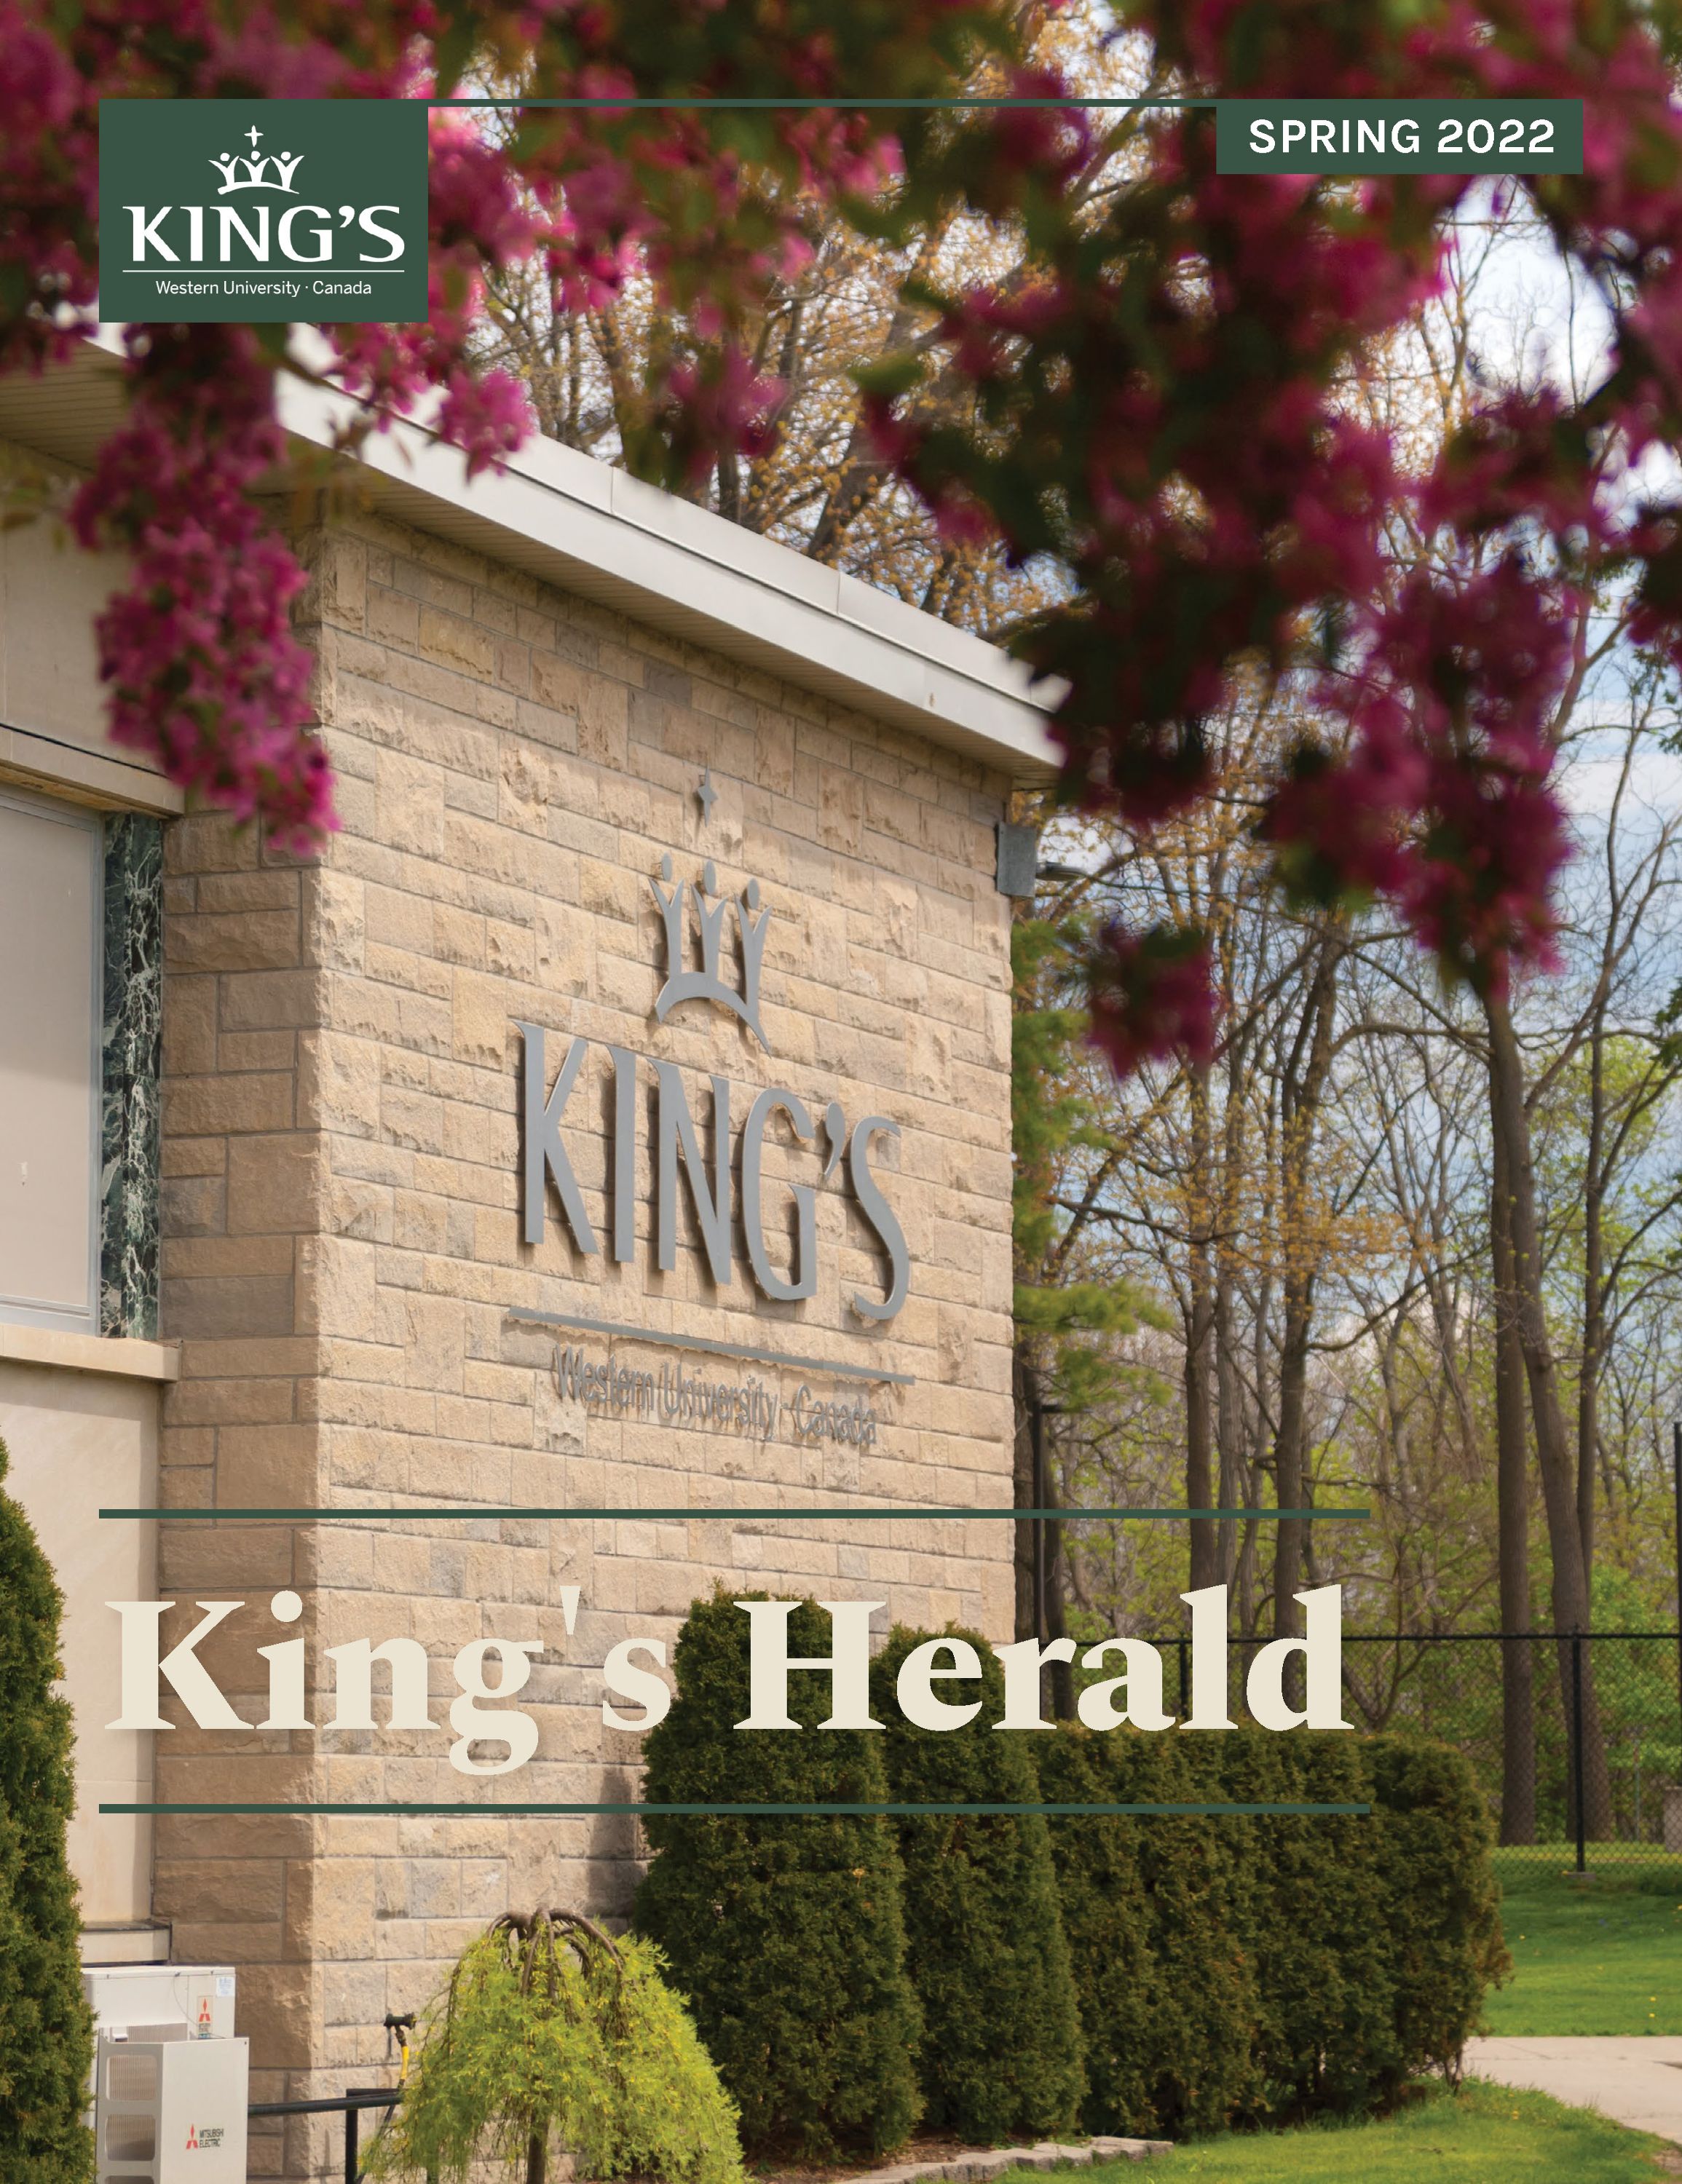 (image: King's HeraldSpring 2022)